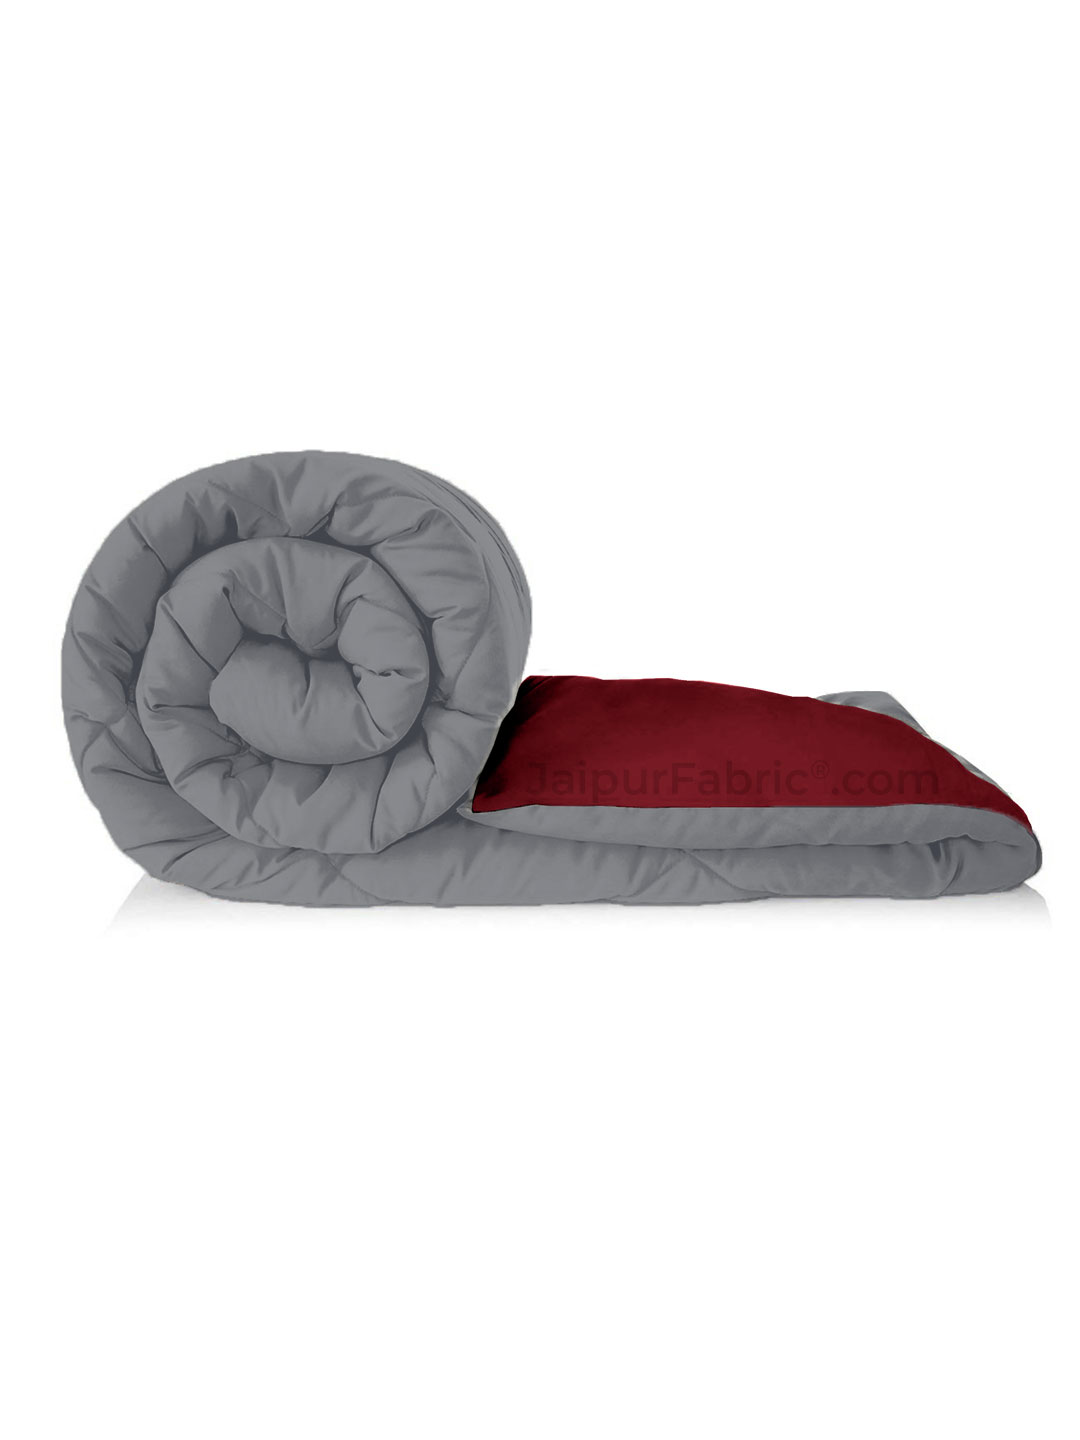 Grey-Maroon Double Bed Comforter